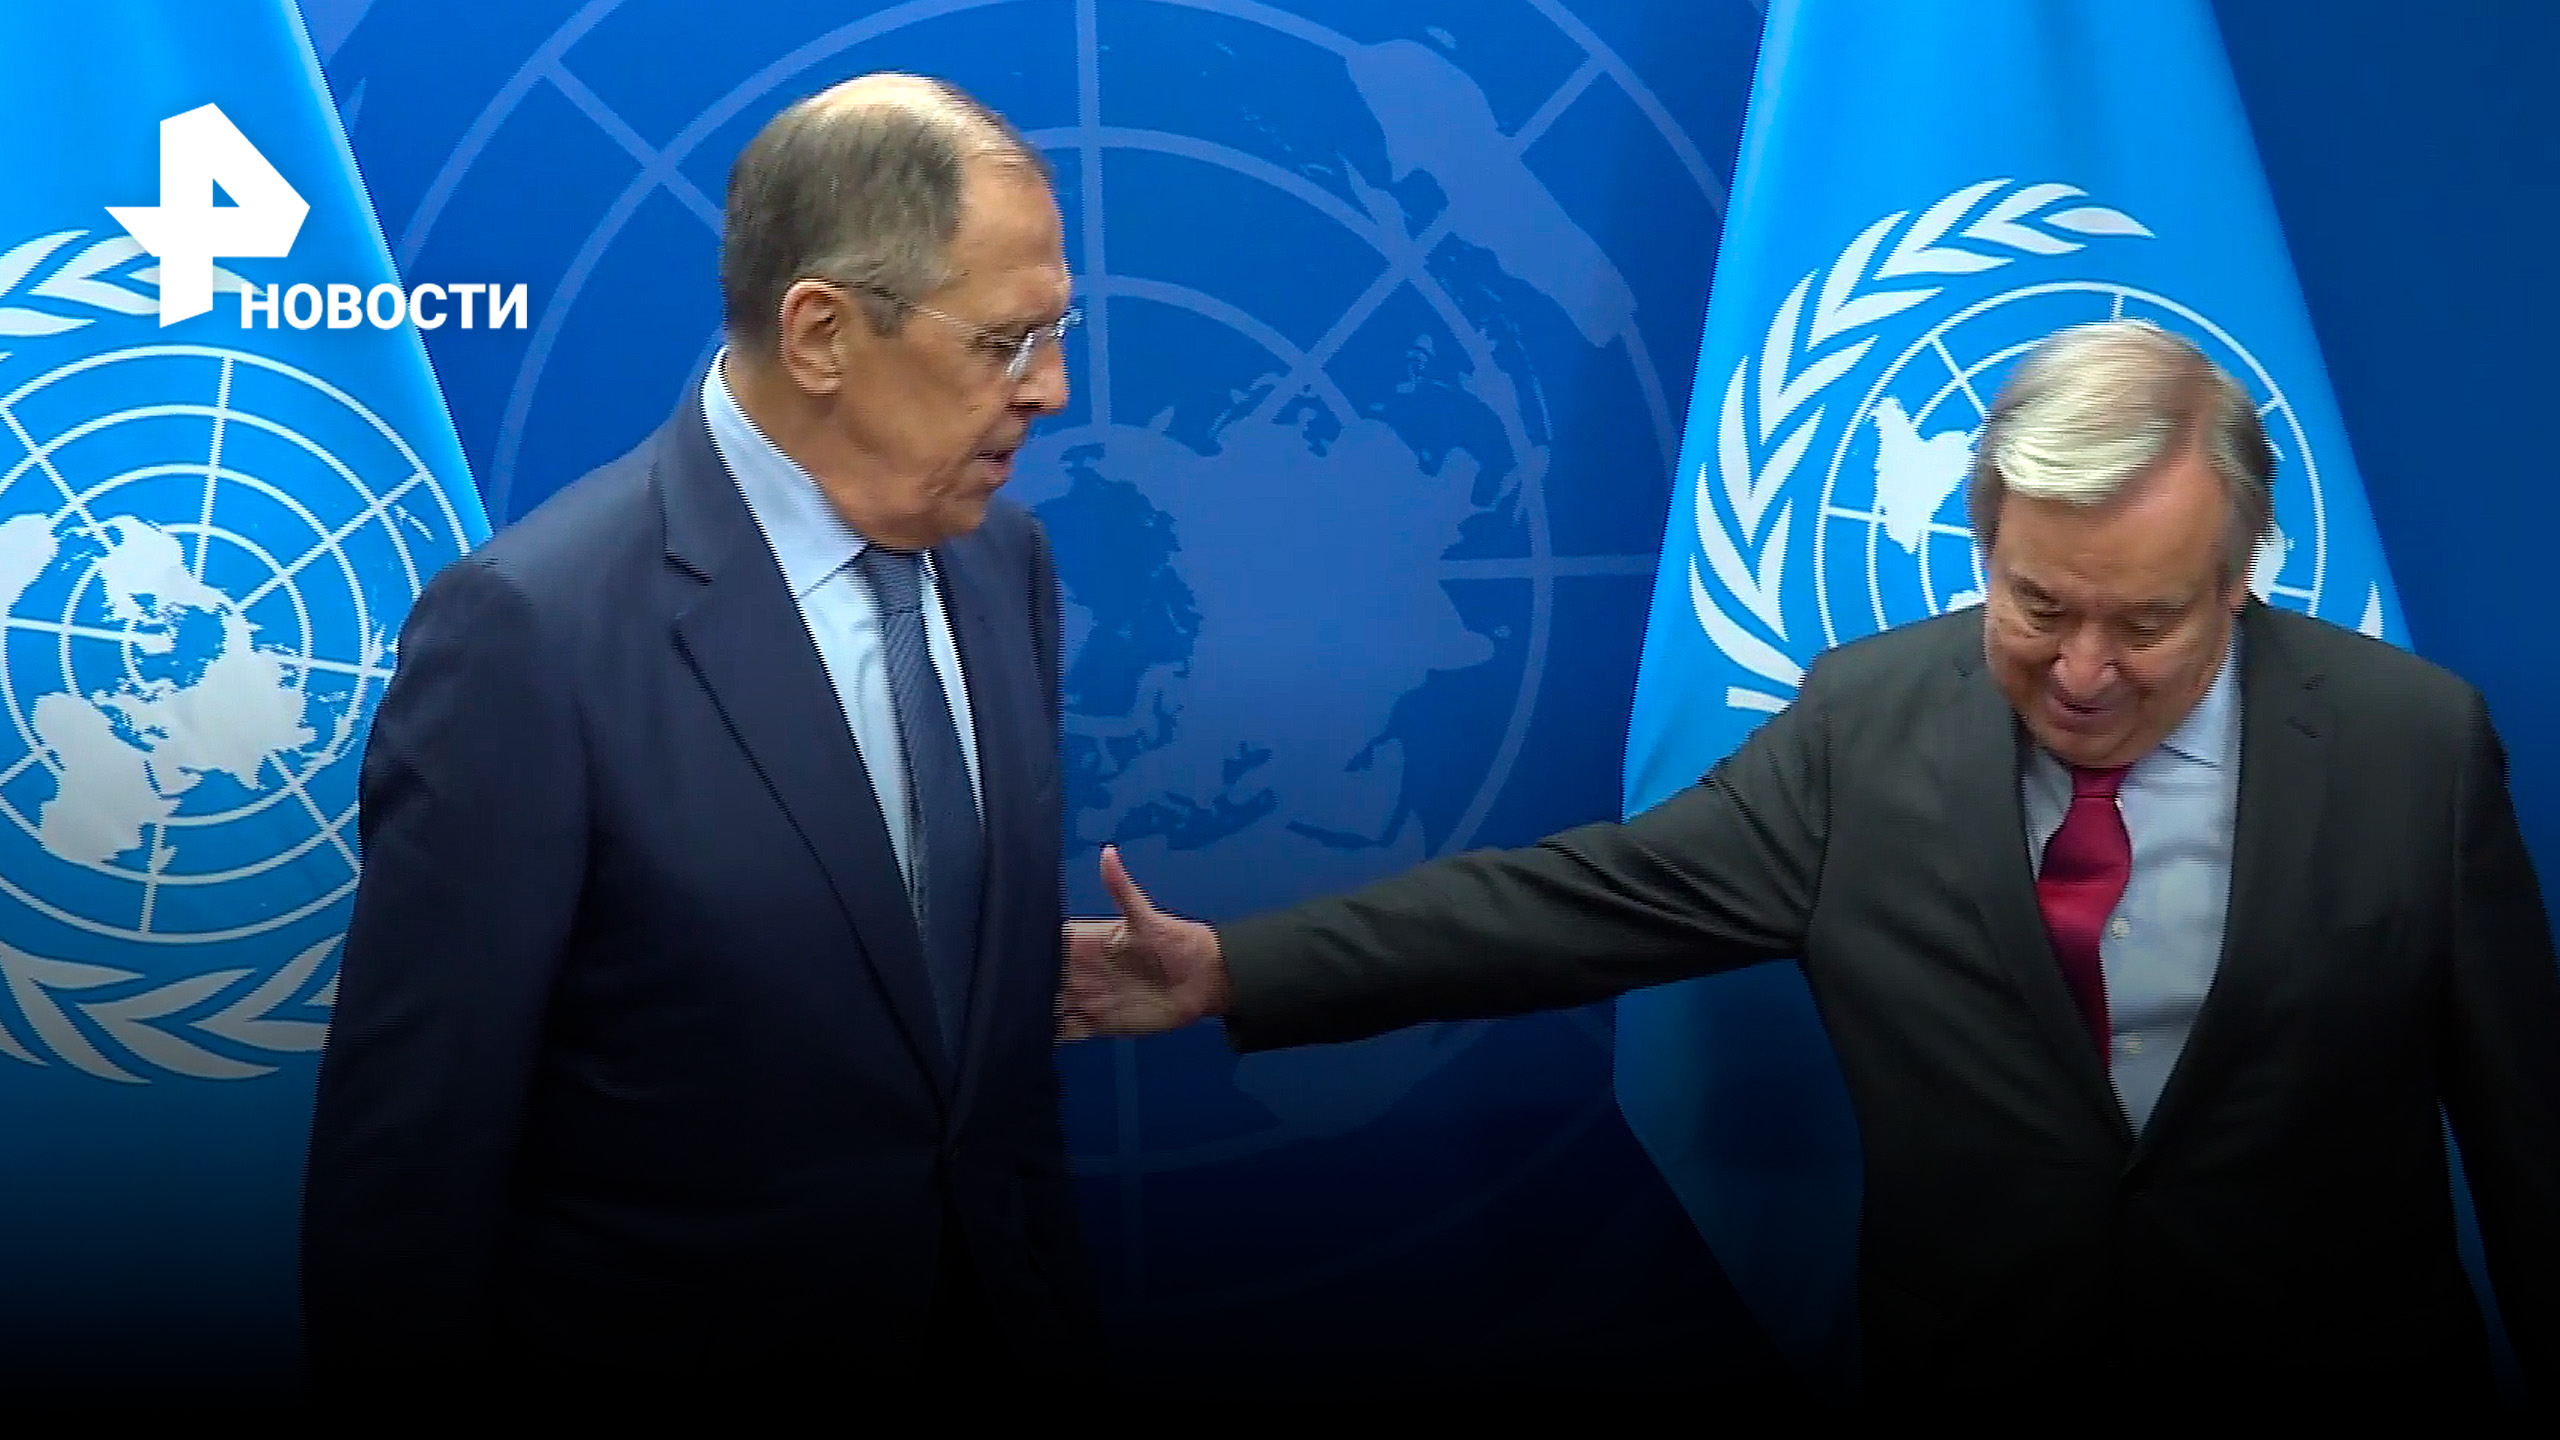 Глава МИД РФ Сергей Лавров провел переговоры с генеральным секретарем ООН Антониу Гутерришем